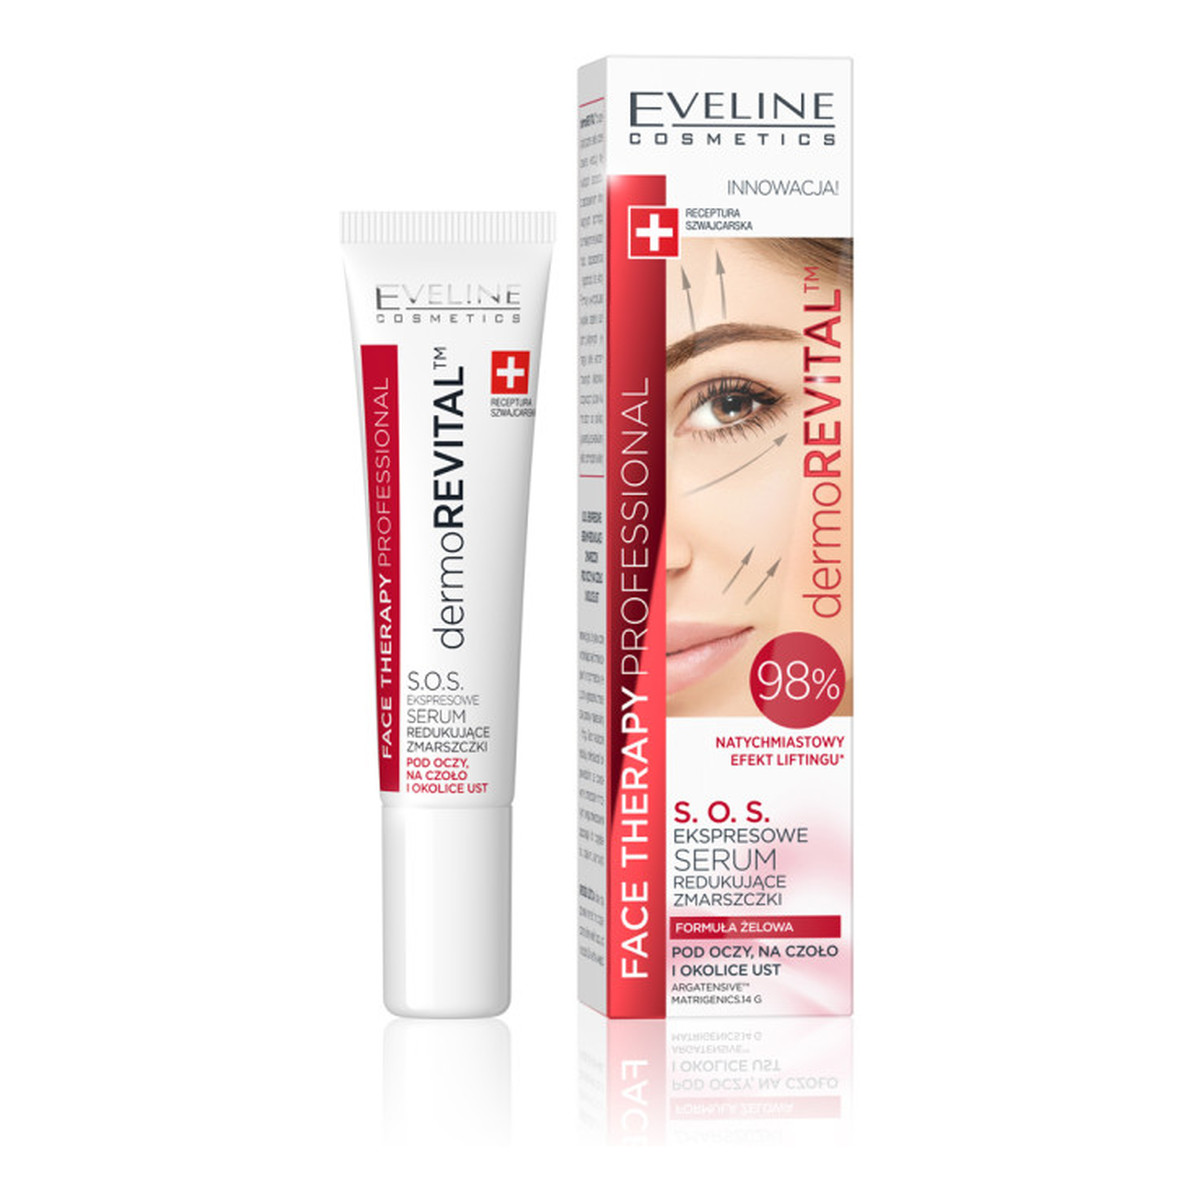 Eveline Face Therapy Professional Ekspresowe Serum S.O.S. redukujące zmarszczki pod oczy na czoło i okolice ust 15ml